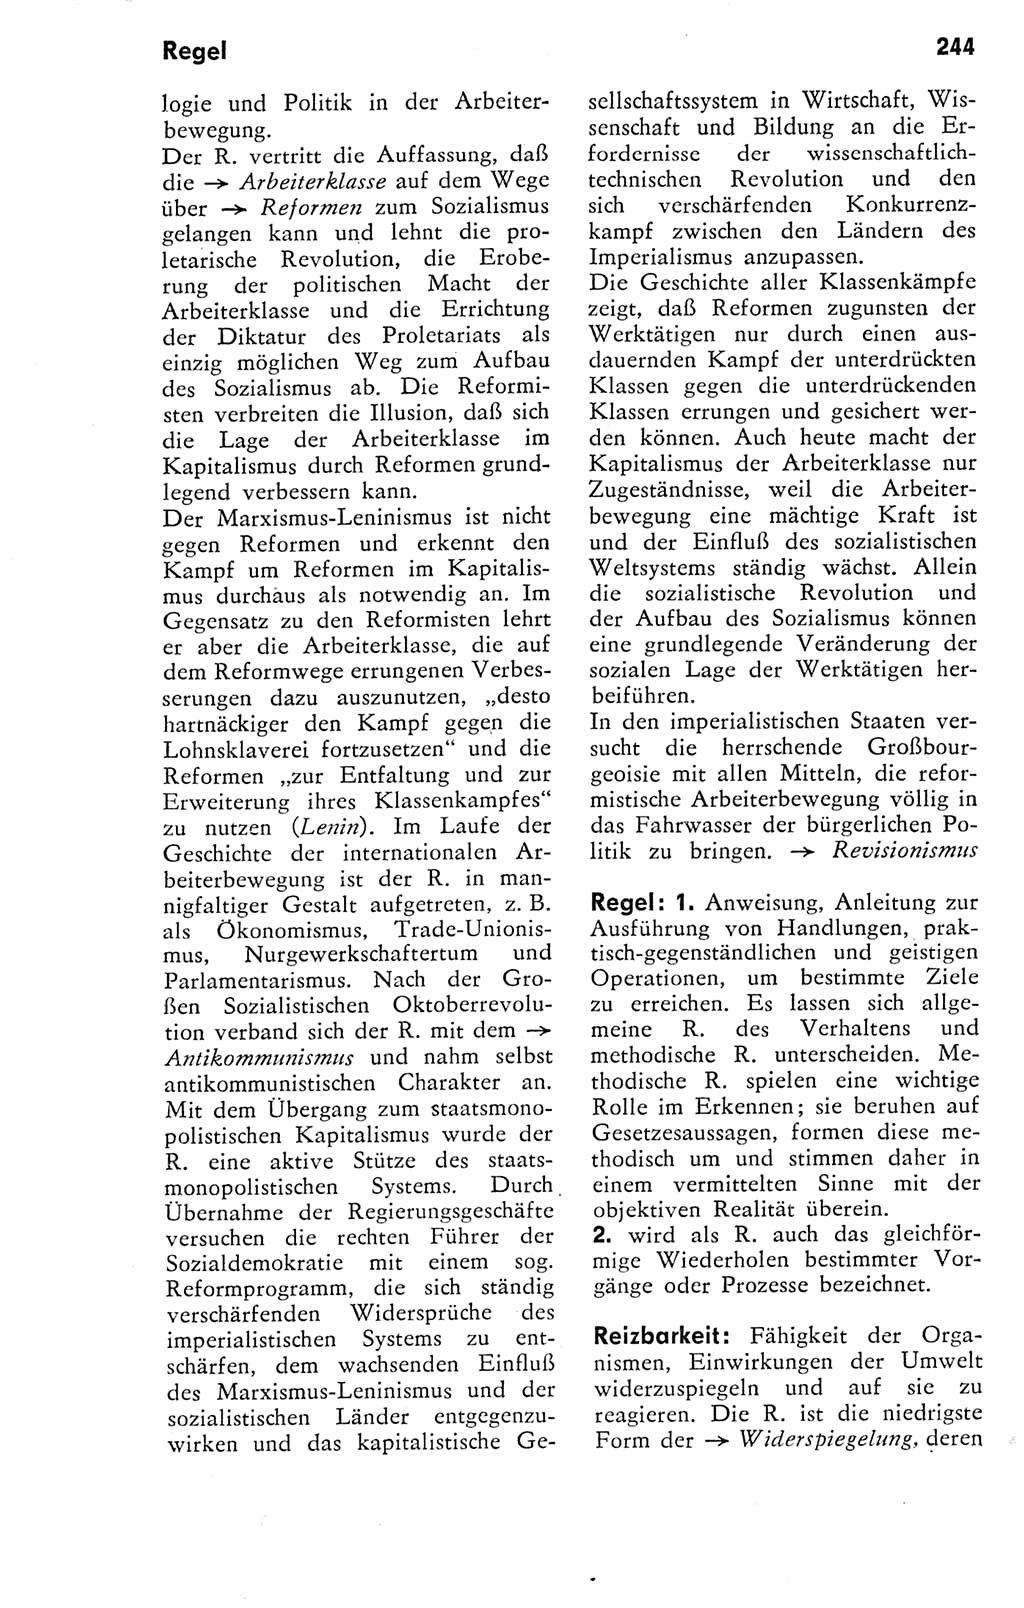 Kleines Wörterbuch der marxistisch-leninistischen Philosophie [Deutsche Demokratische Republik (DDR)] 1974, Seite 244 (Kl. Wb. ML Phil. DDR 1974, S. 244)